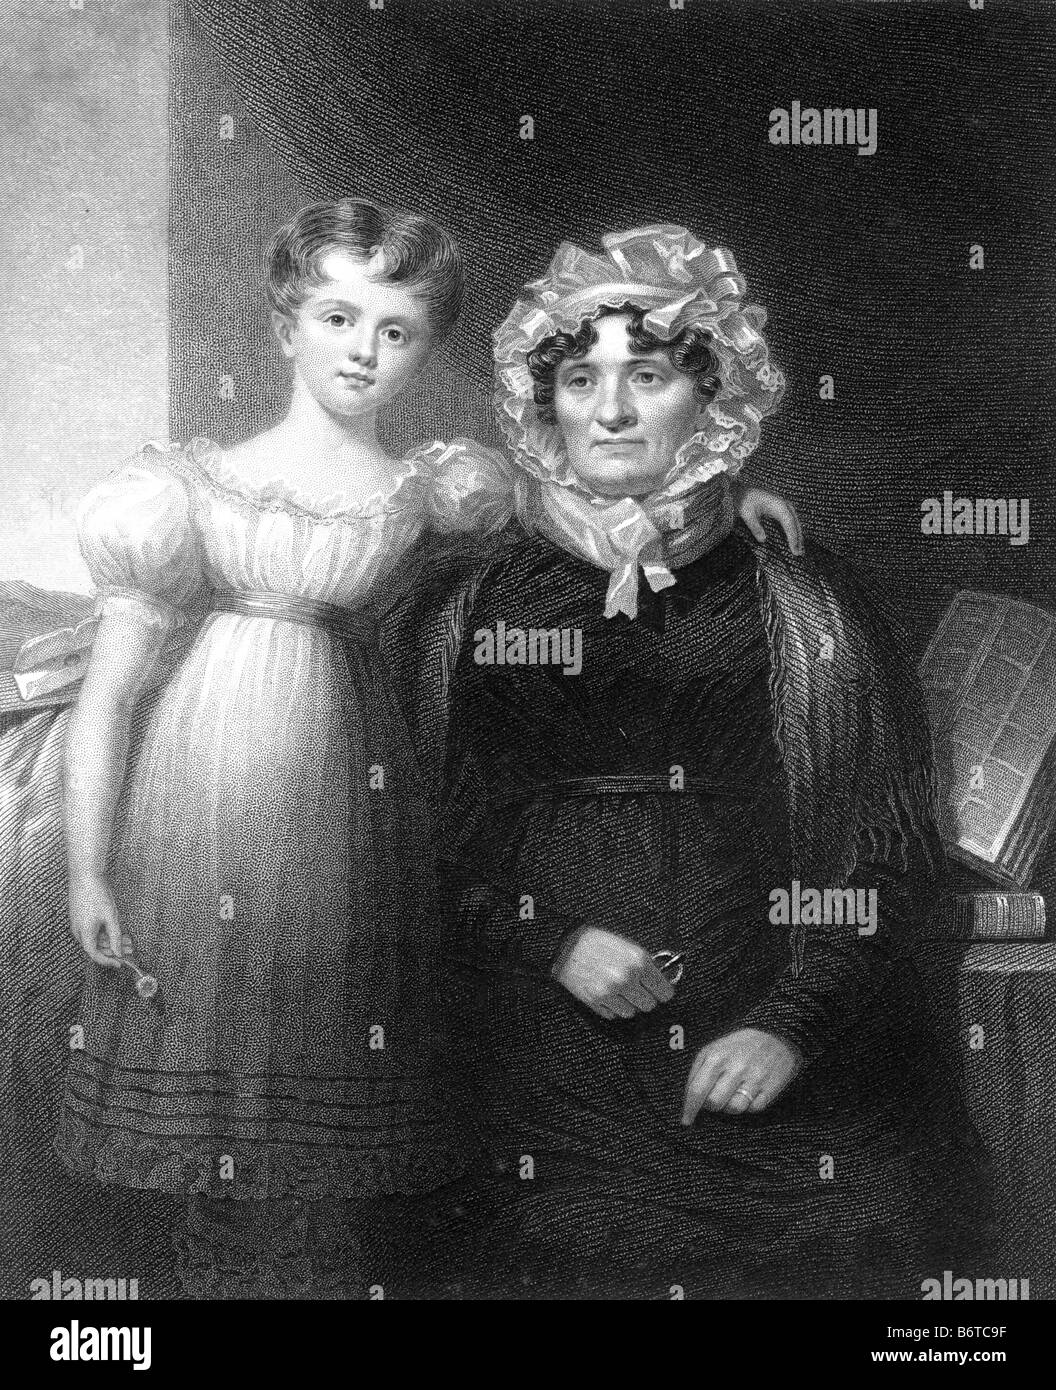 Robert Burns épouse Jean Armour Burns Gravure de David Octavius Hill 1802 à 1870 19ème siècle Illustration Banque D'Images